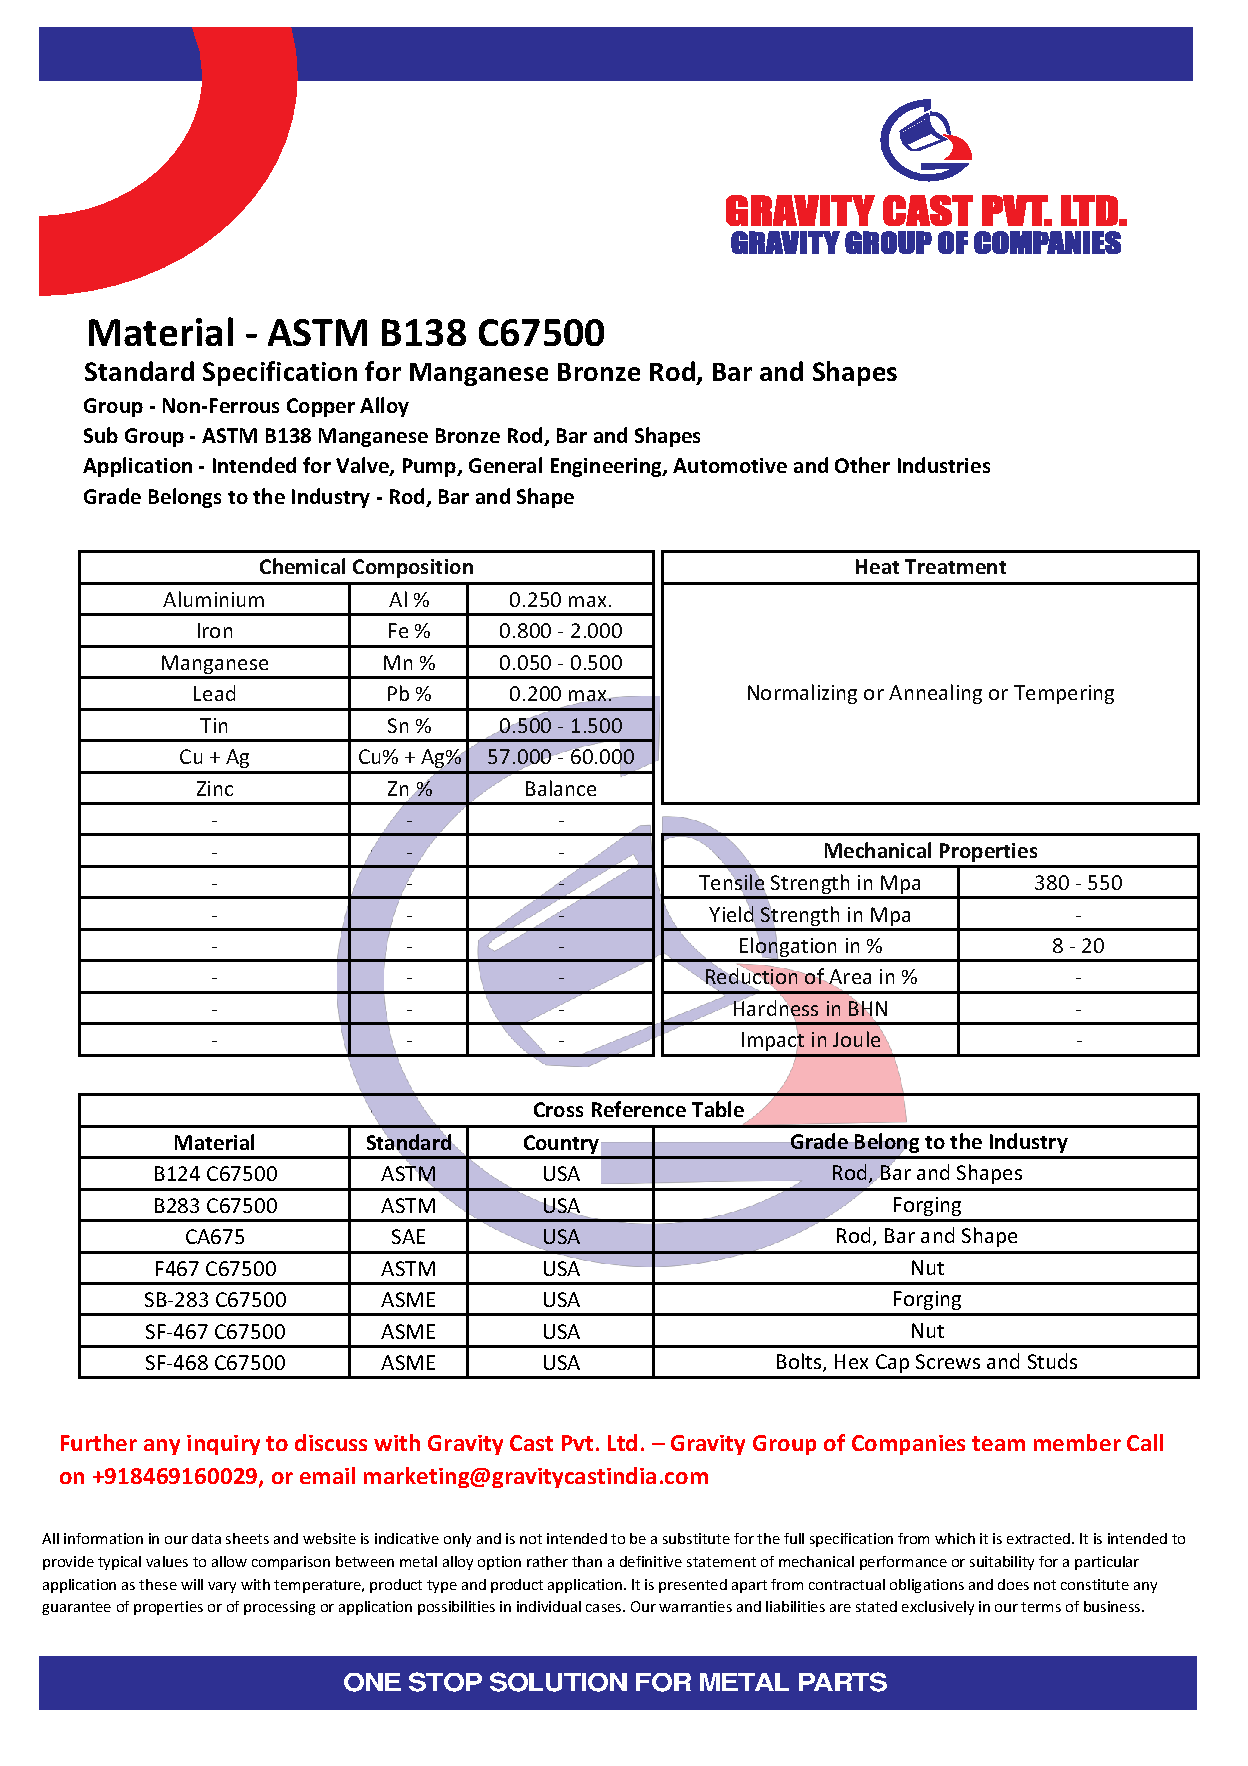 ASTM B138 C67500.pdf